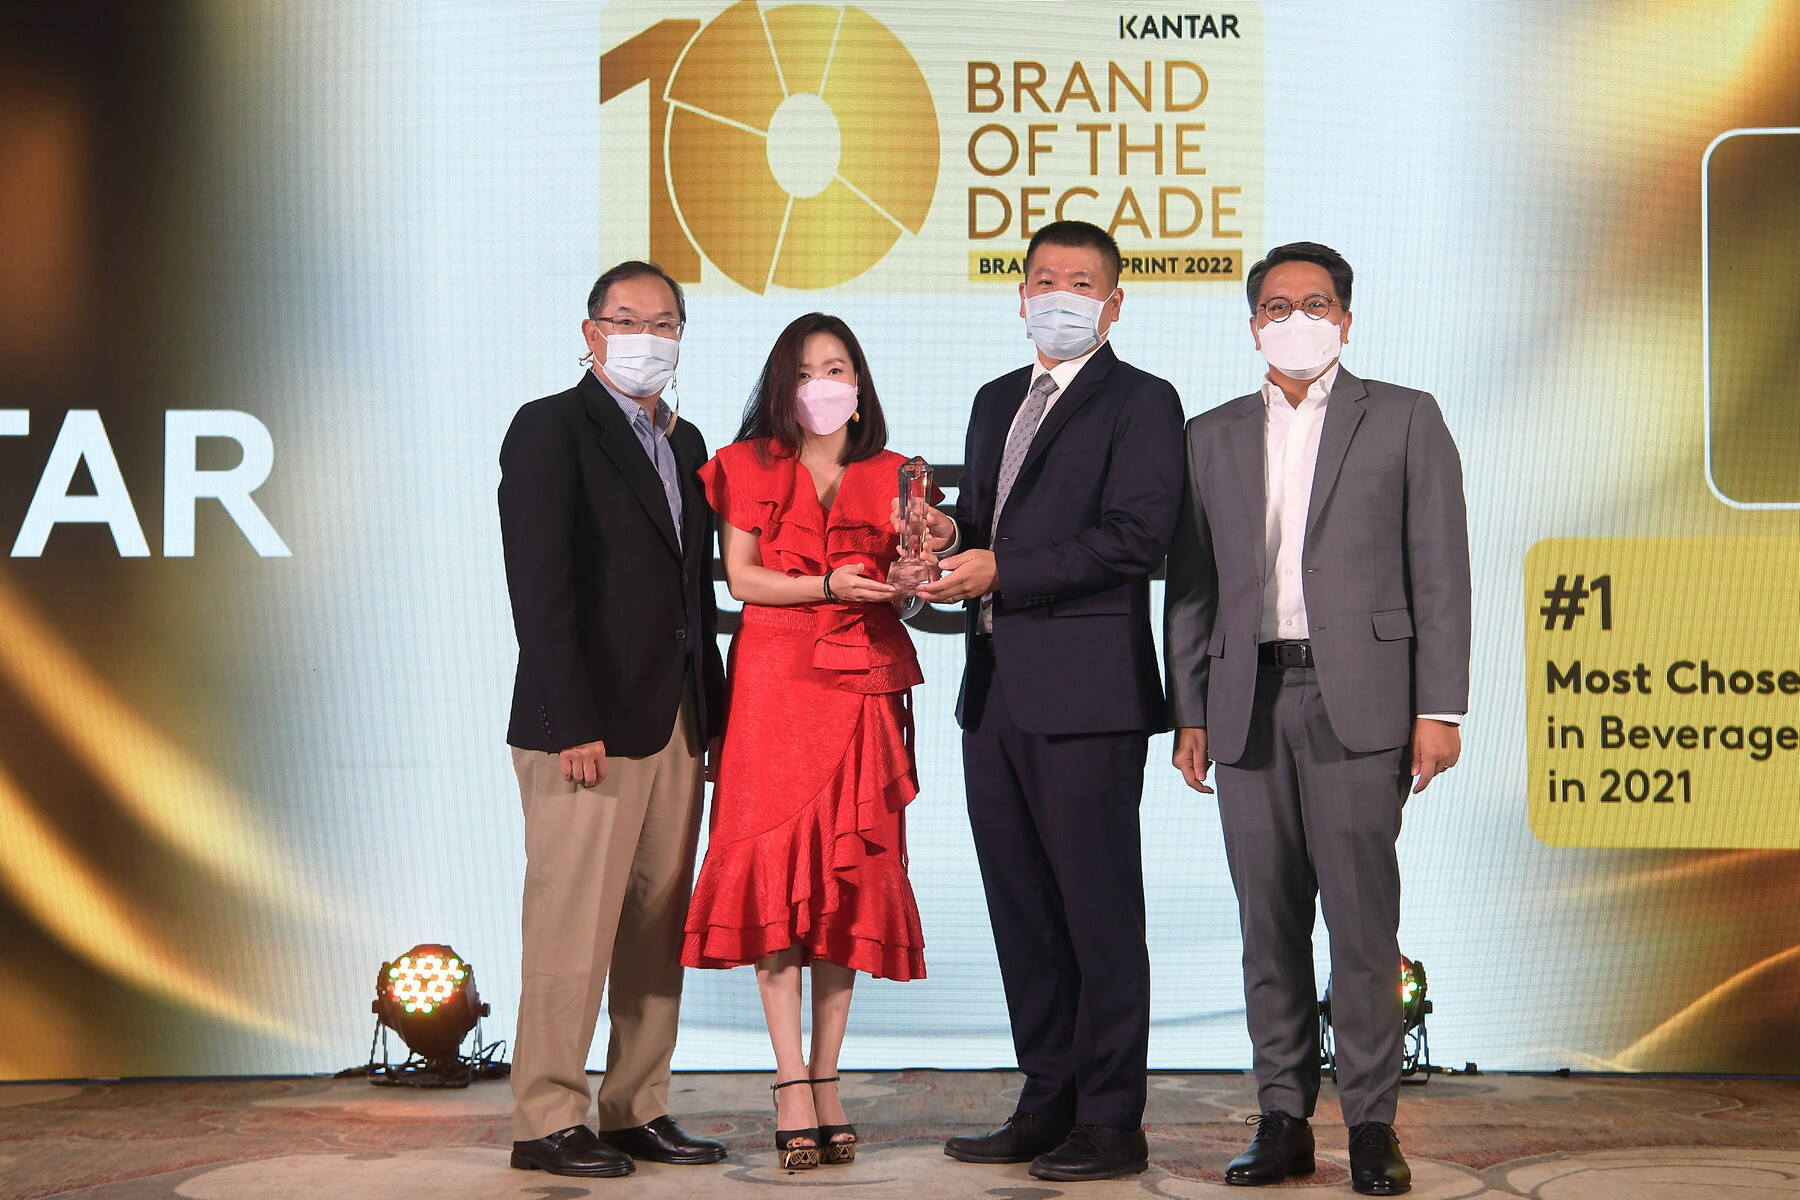 เนสกาแฟยืนหนึ่งกาแฟคุณภาพ คว้ารางวัลแบรนด์แห่งทศวรรษอันดับ 1 ในกลุ่มเครื่องดื่ม จาก Kantar, Brand Footprint Awards 2022